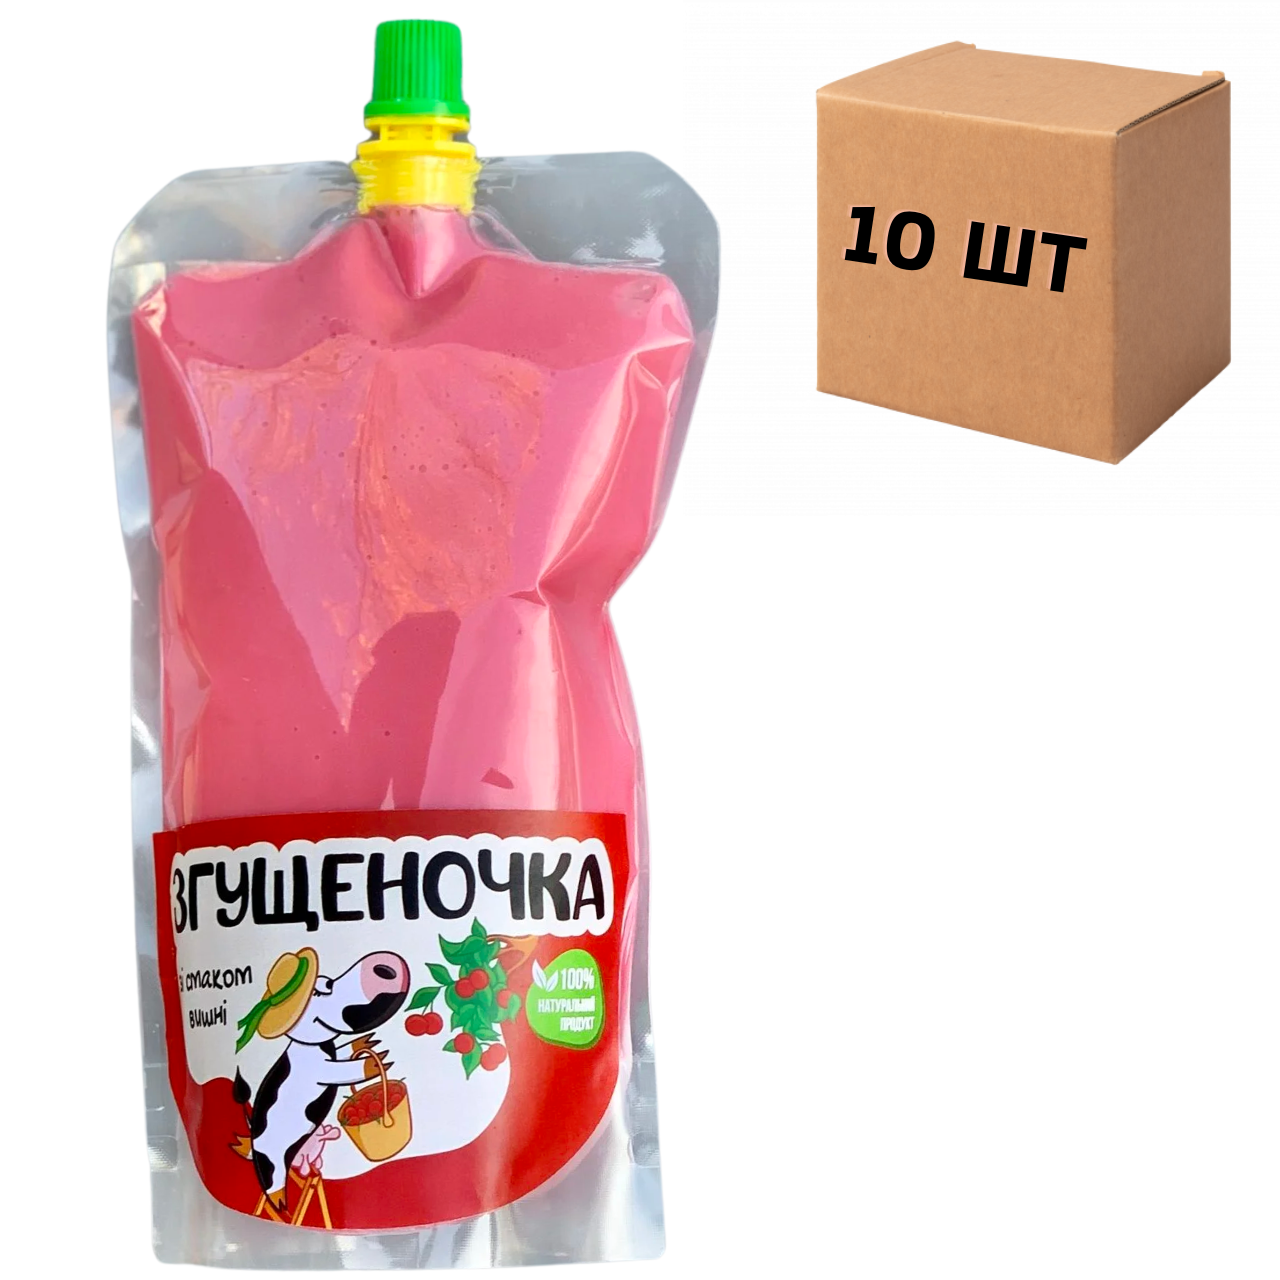 Ящик згущеного молока зі смаком вишні в дой-паках 10 шт по 500 г.